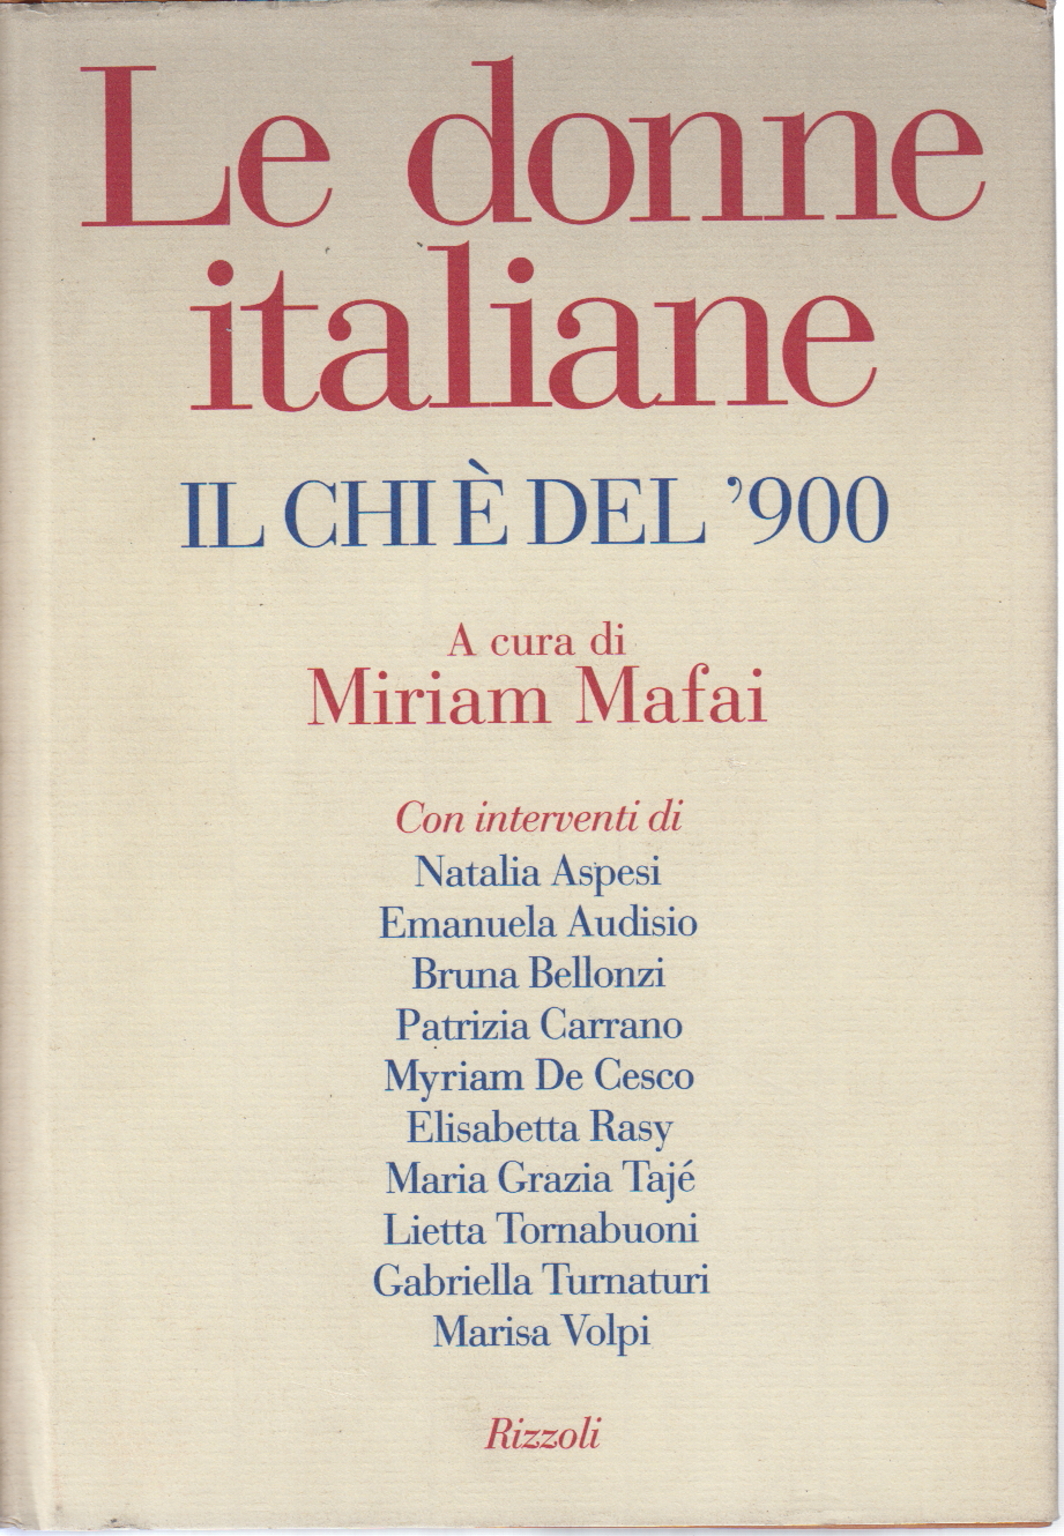 Las mujeres italianas, Miriam Mafai